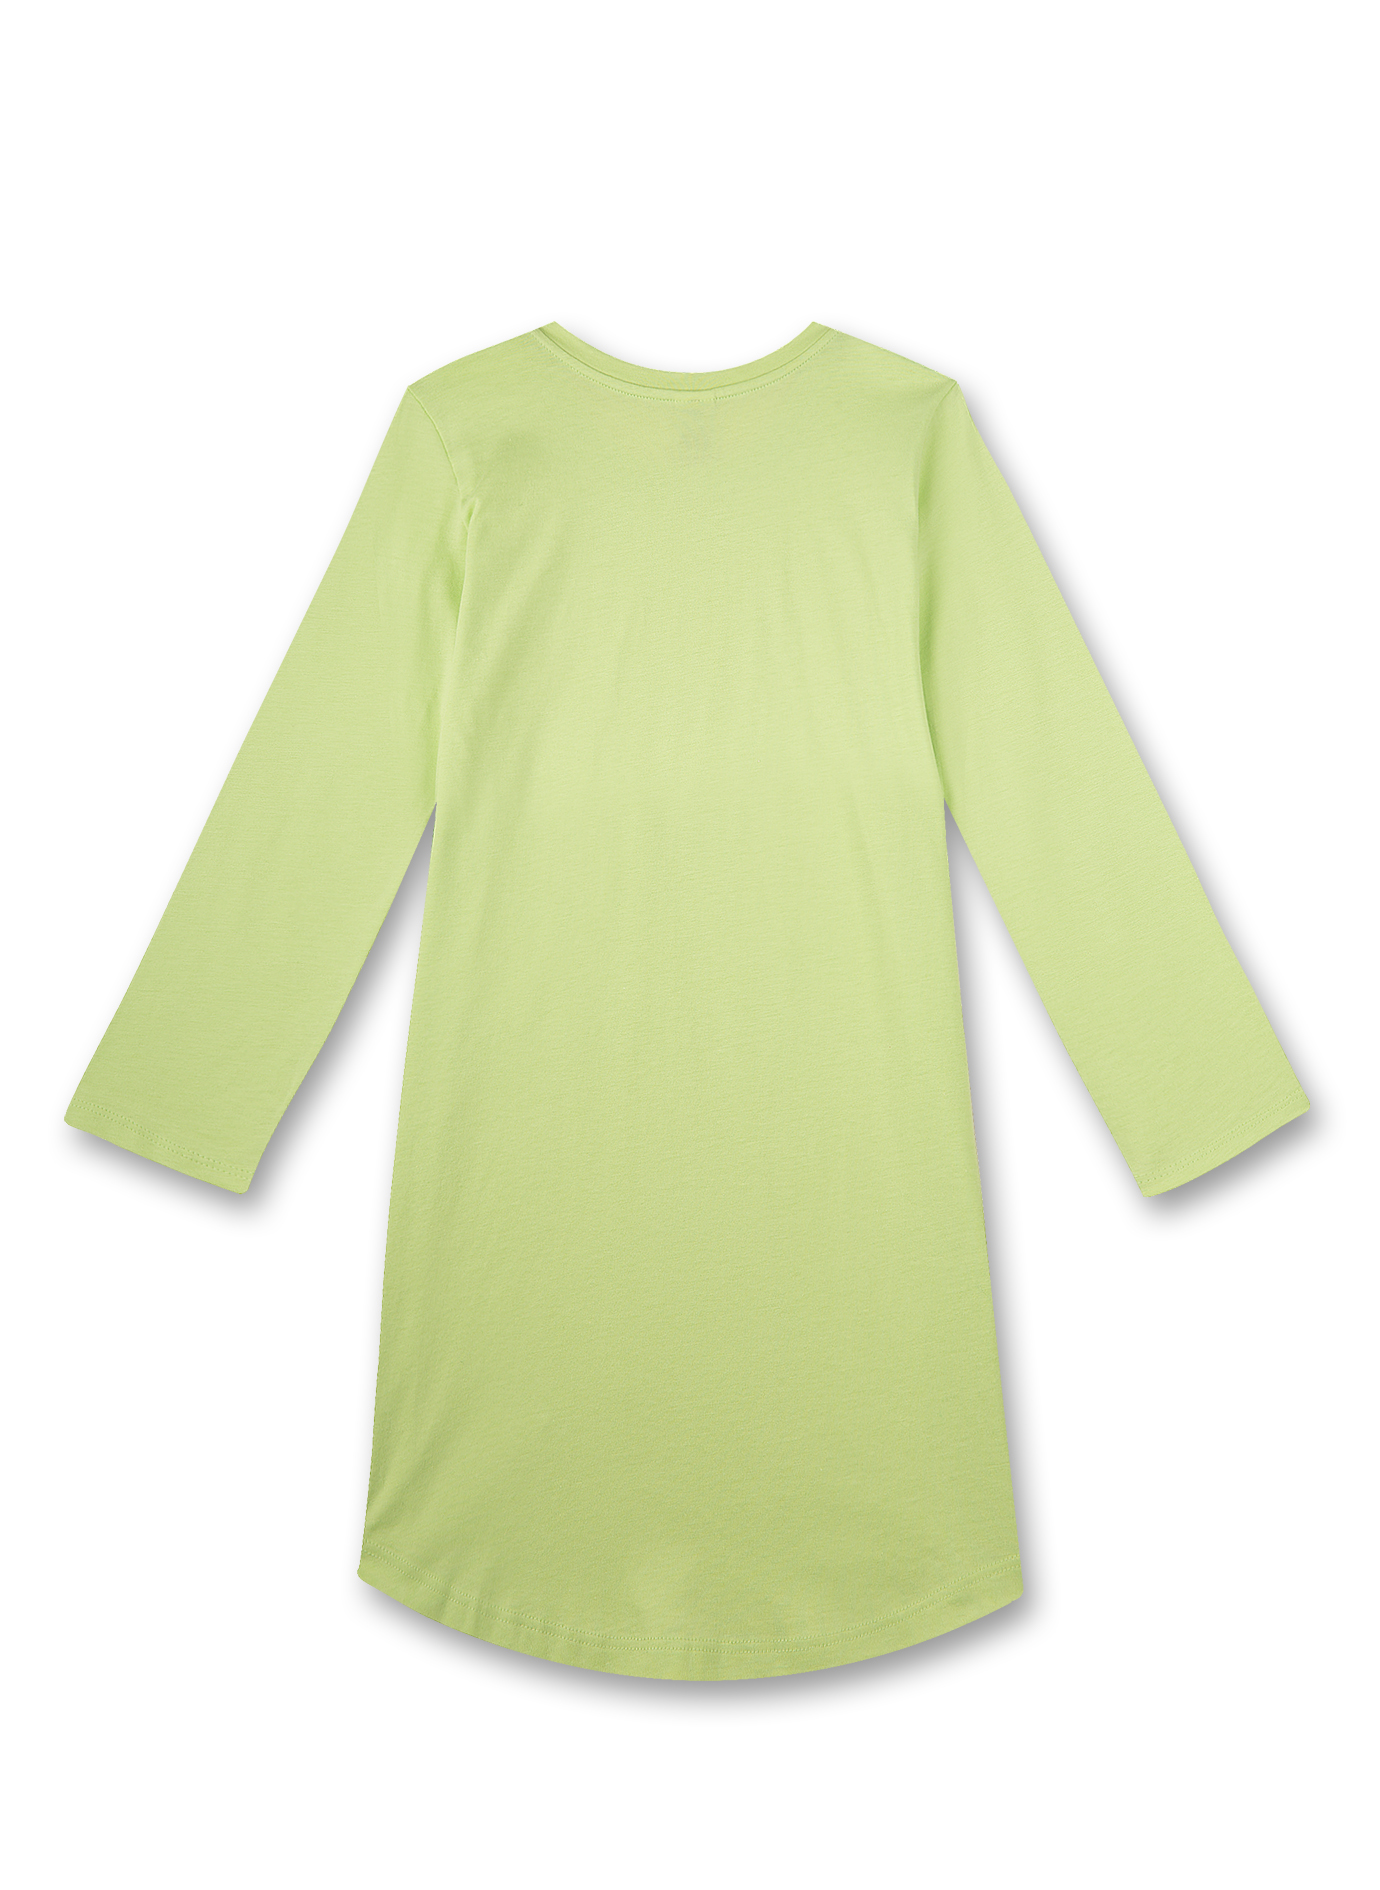 Mädchen-Nachthemd Grün